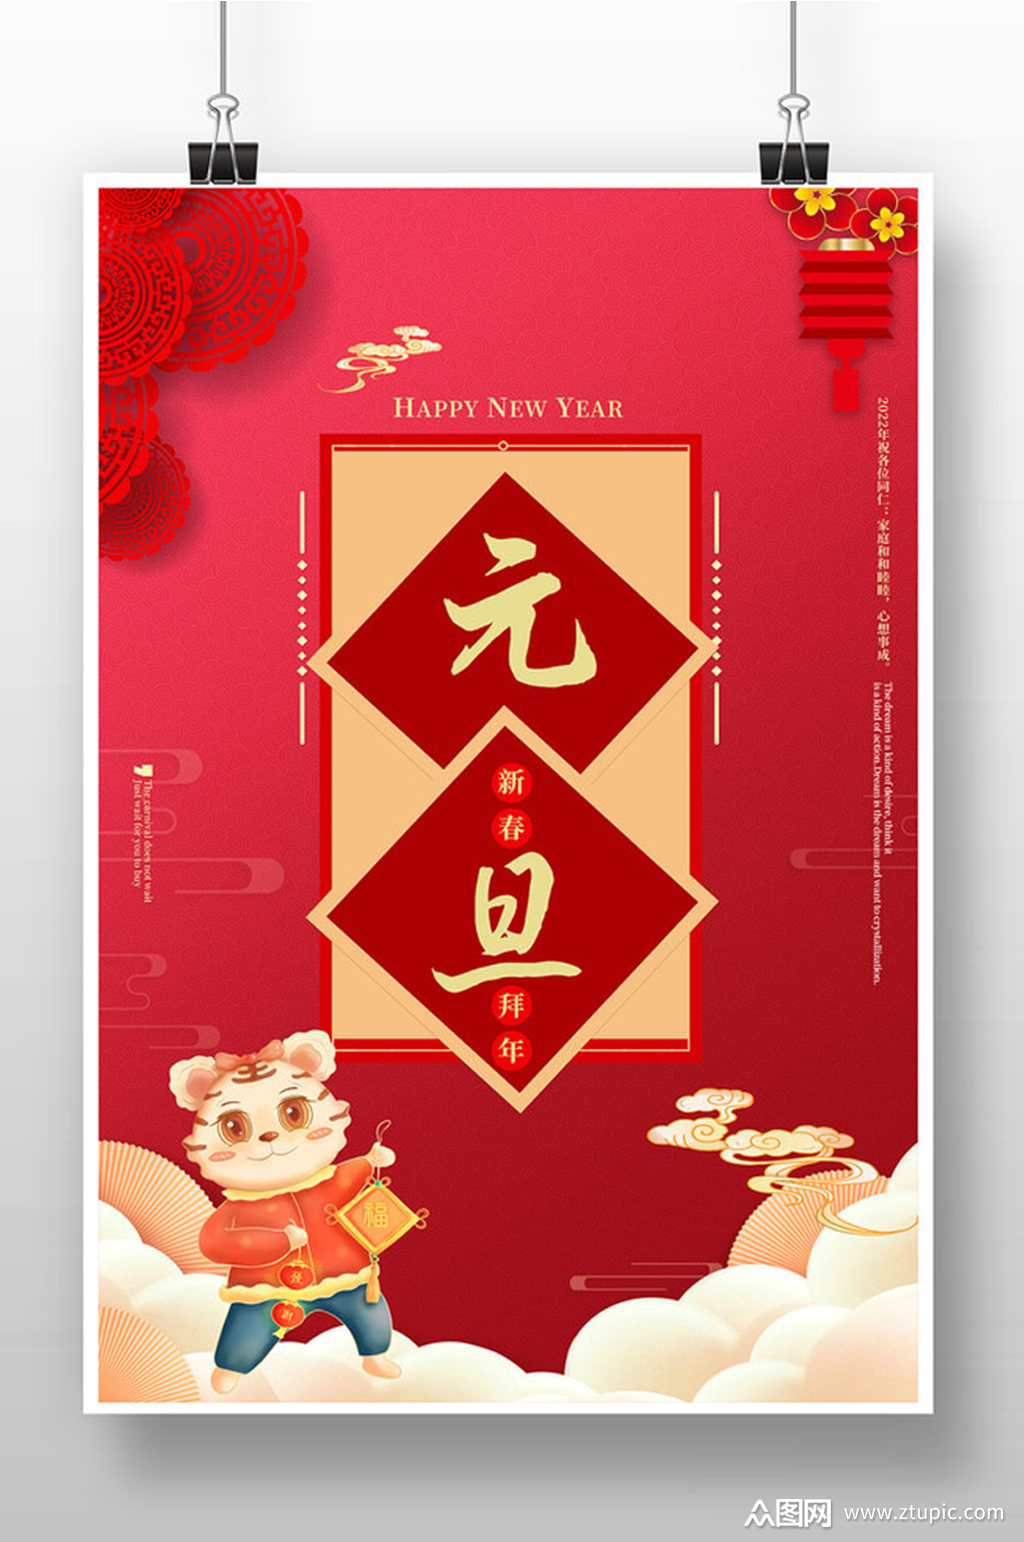 红色喜庆元旦节海报设计素材